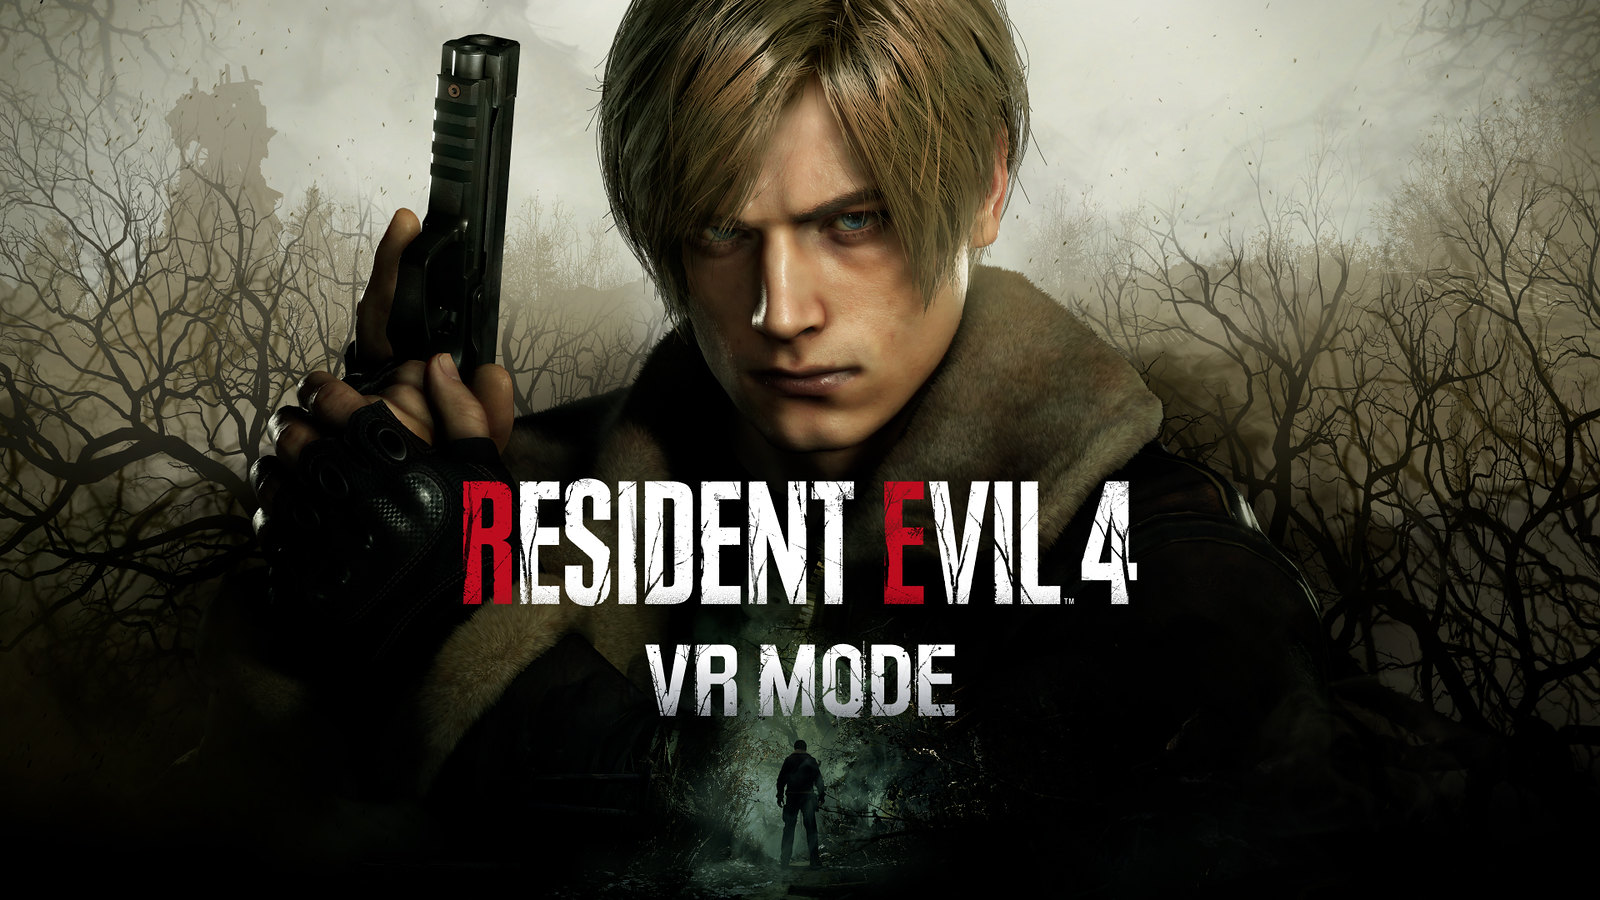 Leon Kennedy è al centro dell'immagine, rivolto verso l'obiettivo e circondato da tetri boschi. Il testo sullo schermo dice: Resident Evil 4 VR Mode